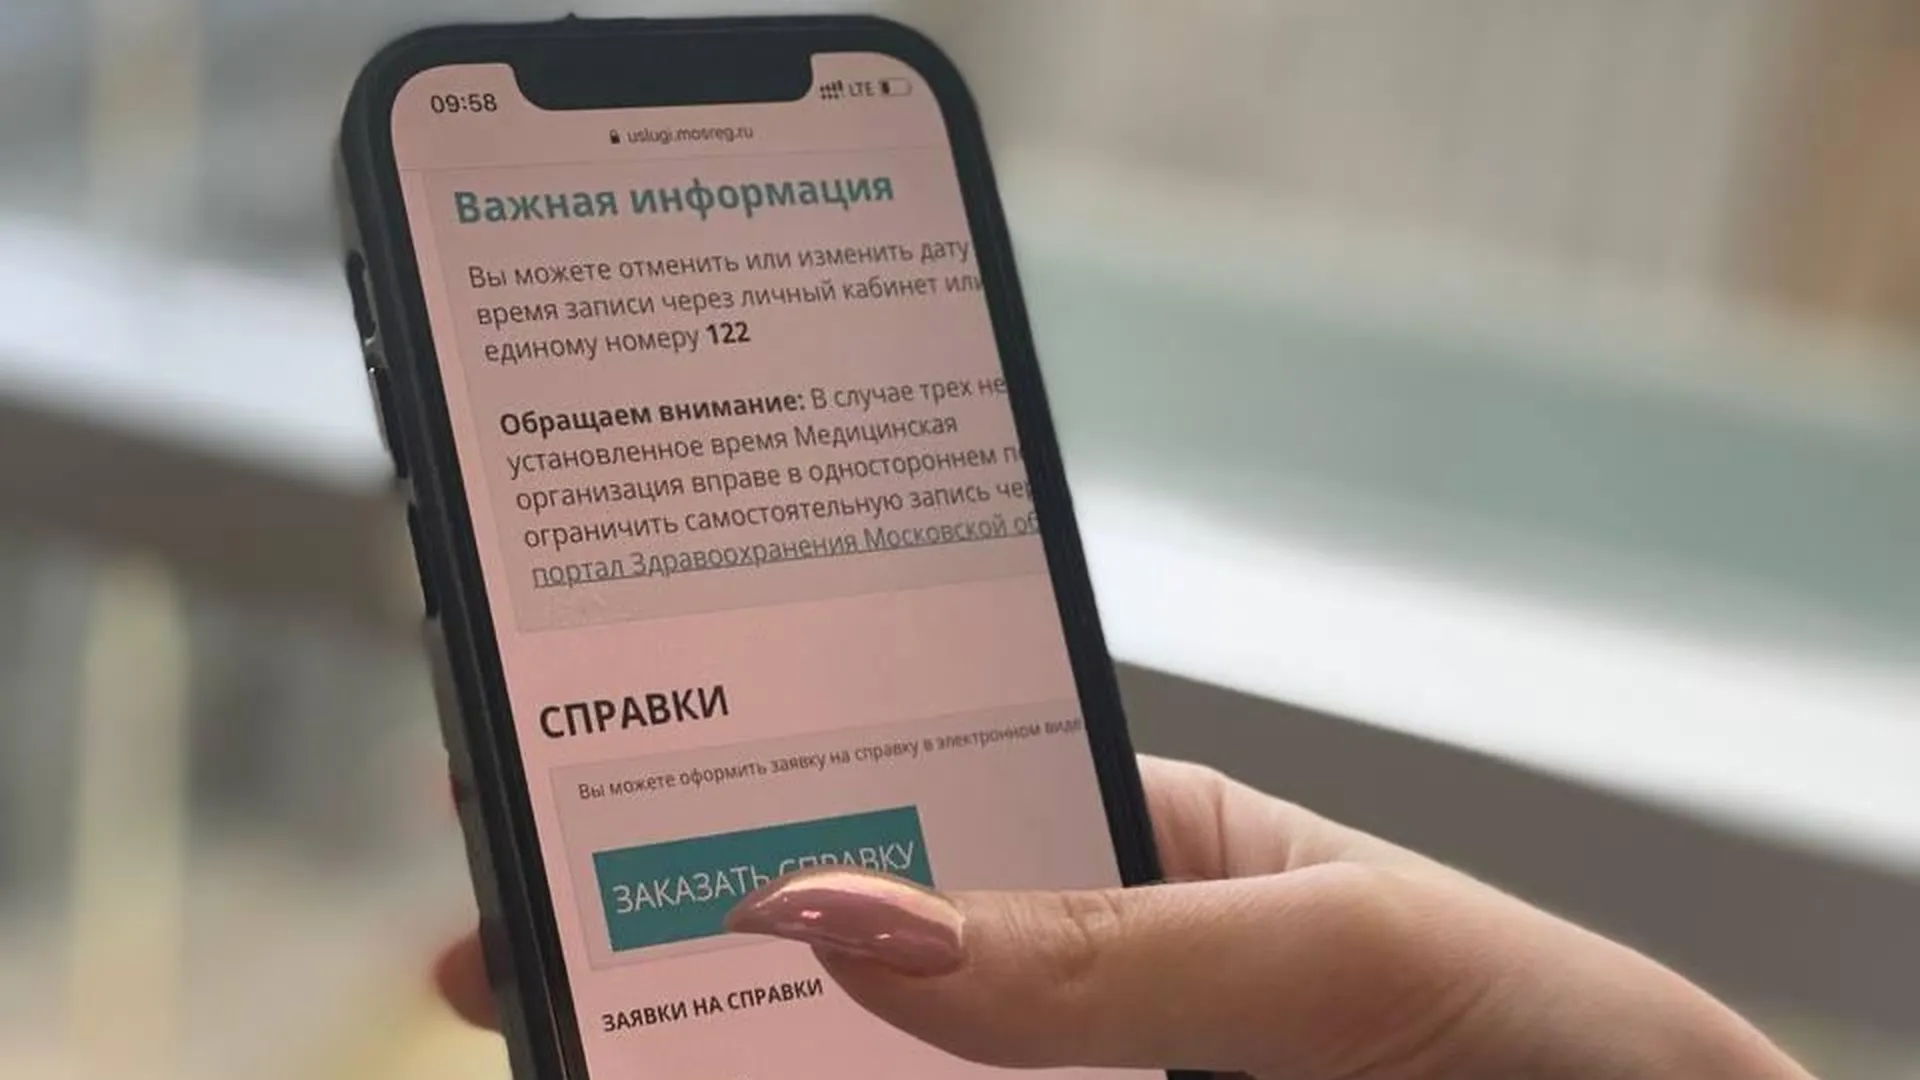 Сайт Министерства здравоохранения Московской области